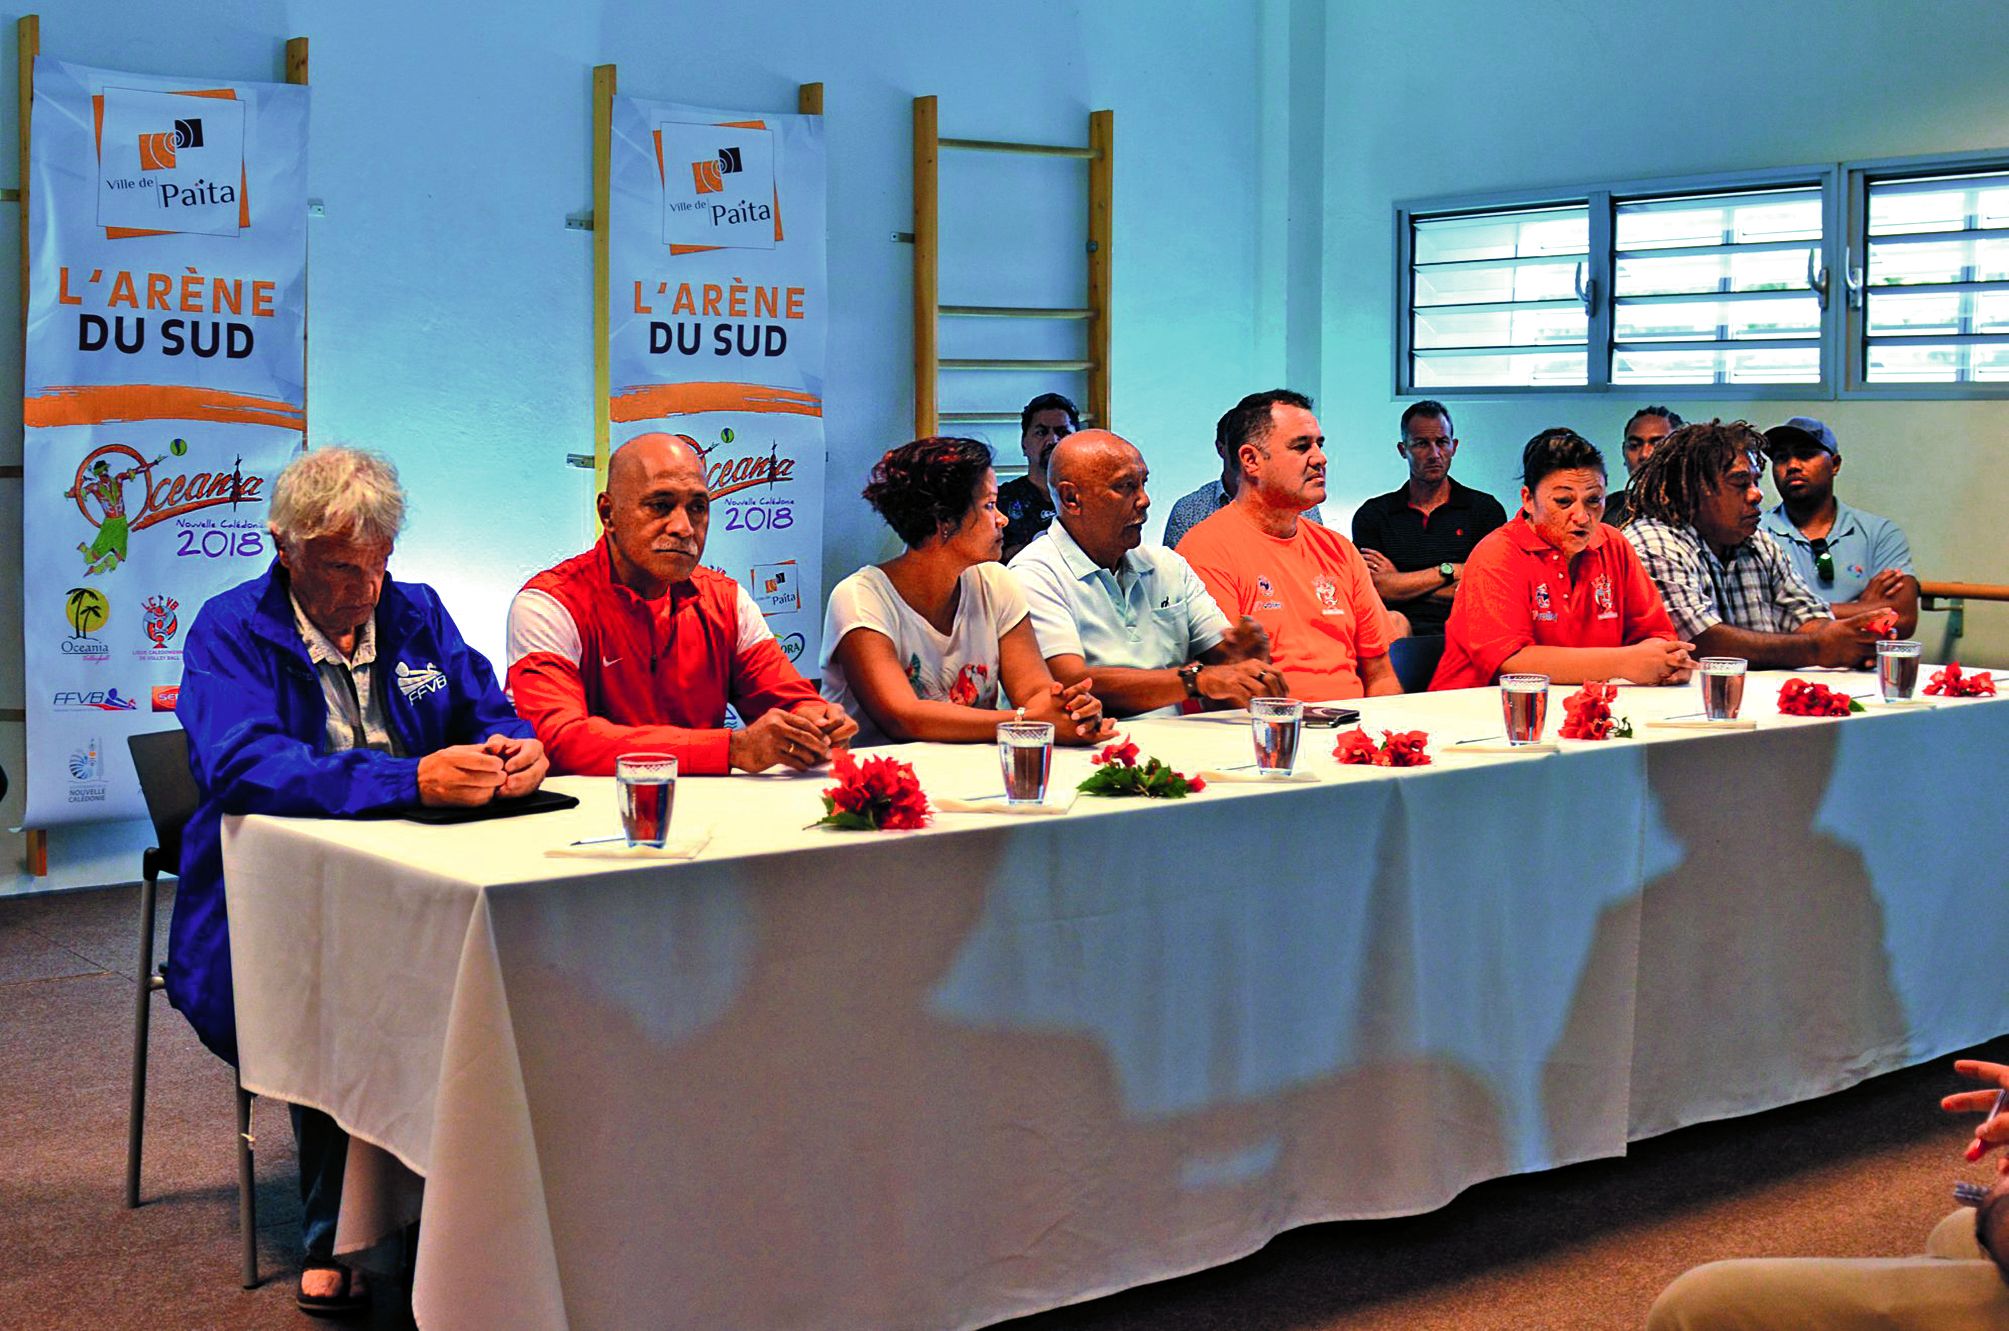 Des représentants de la FFVB, de l’OZVA et de la Ligue vont discuter durant ces Oceania de la place de la Calédonie dans le volley régional. Photo Ville de Païta